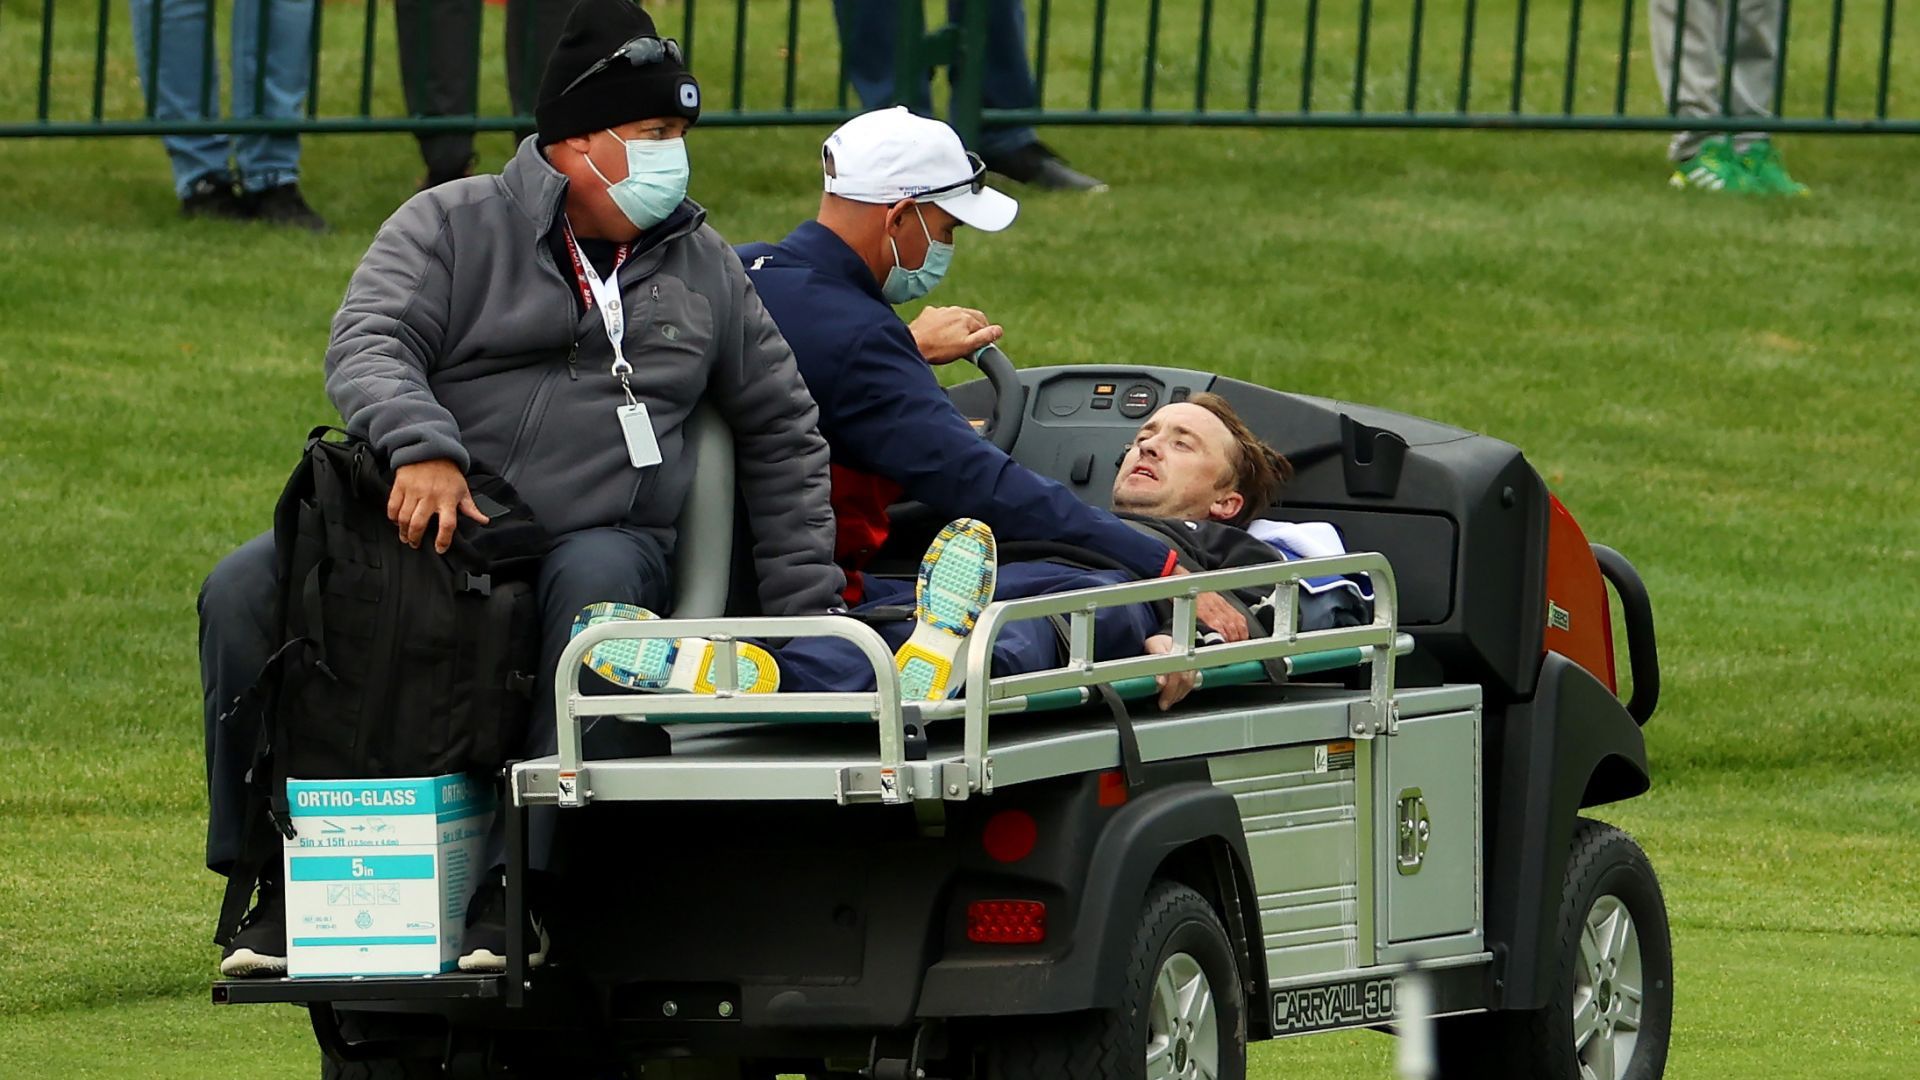 Актьорът Том Фелтън от поредицата "Хари Потър" припадна на голф мач